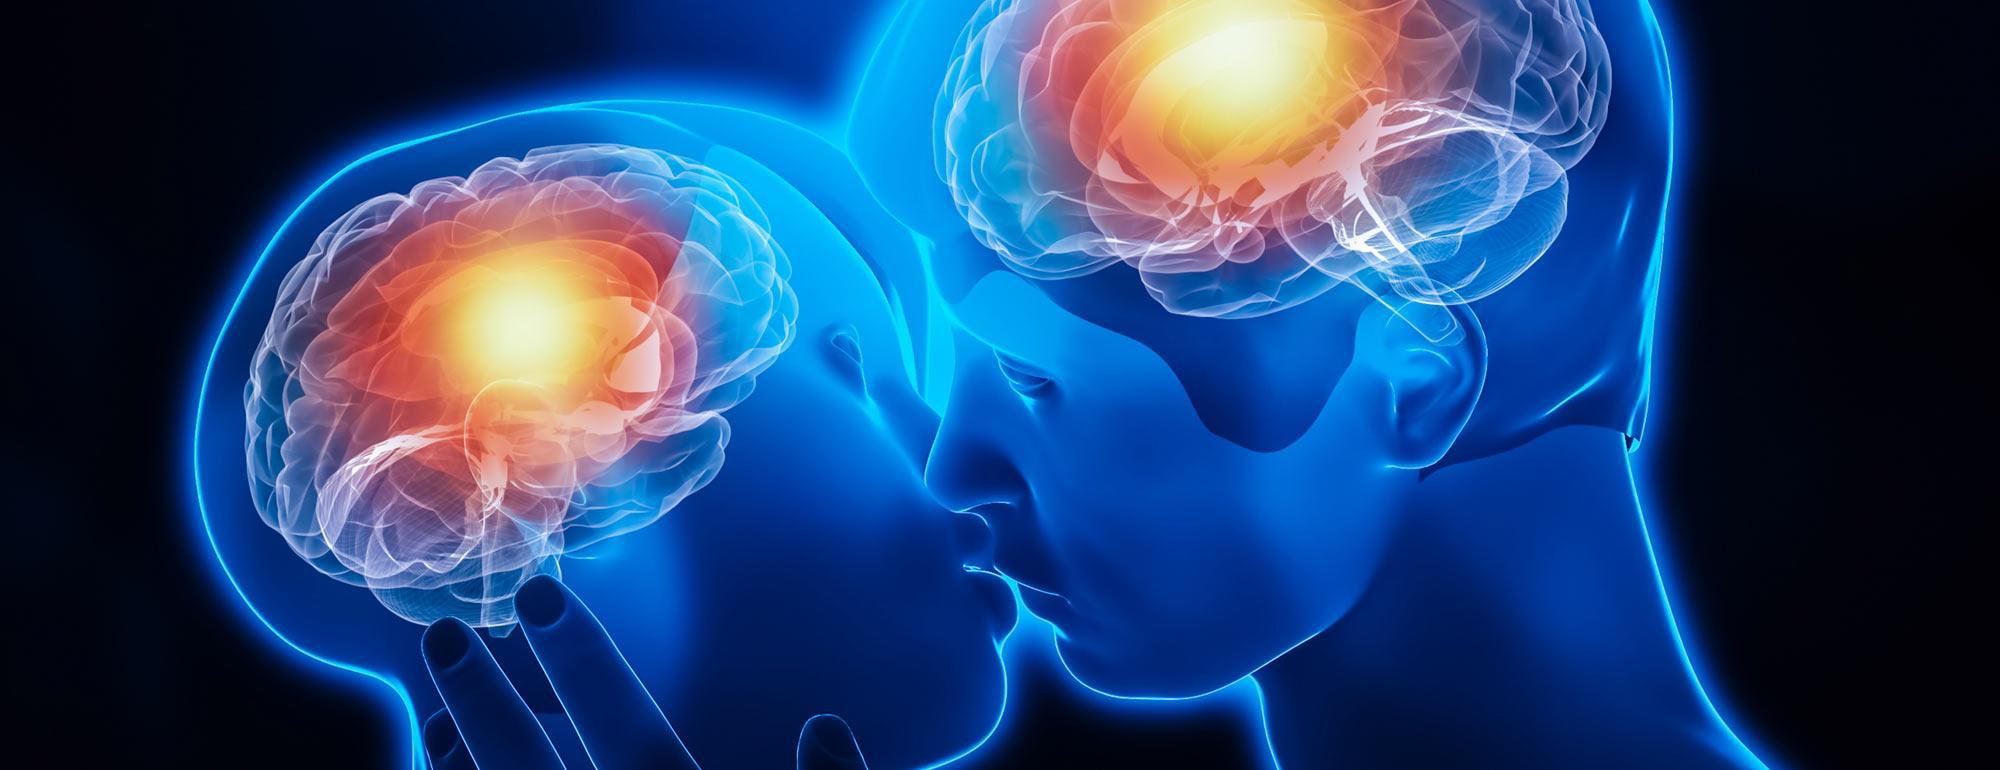 电脑渲染的两个人接吻和他们的大脑激活